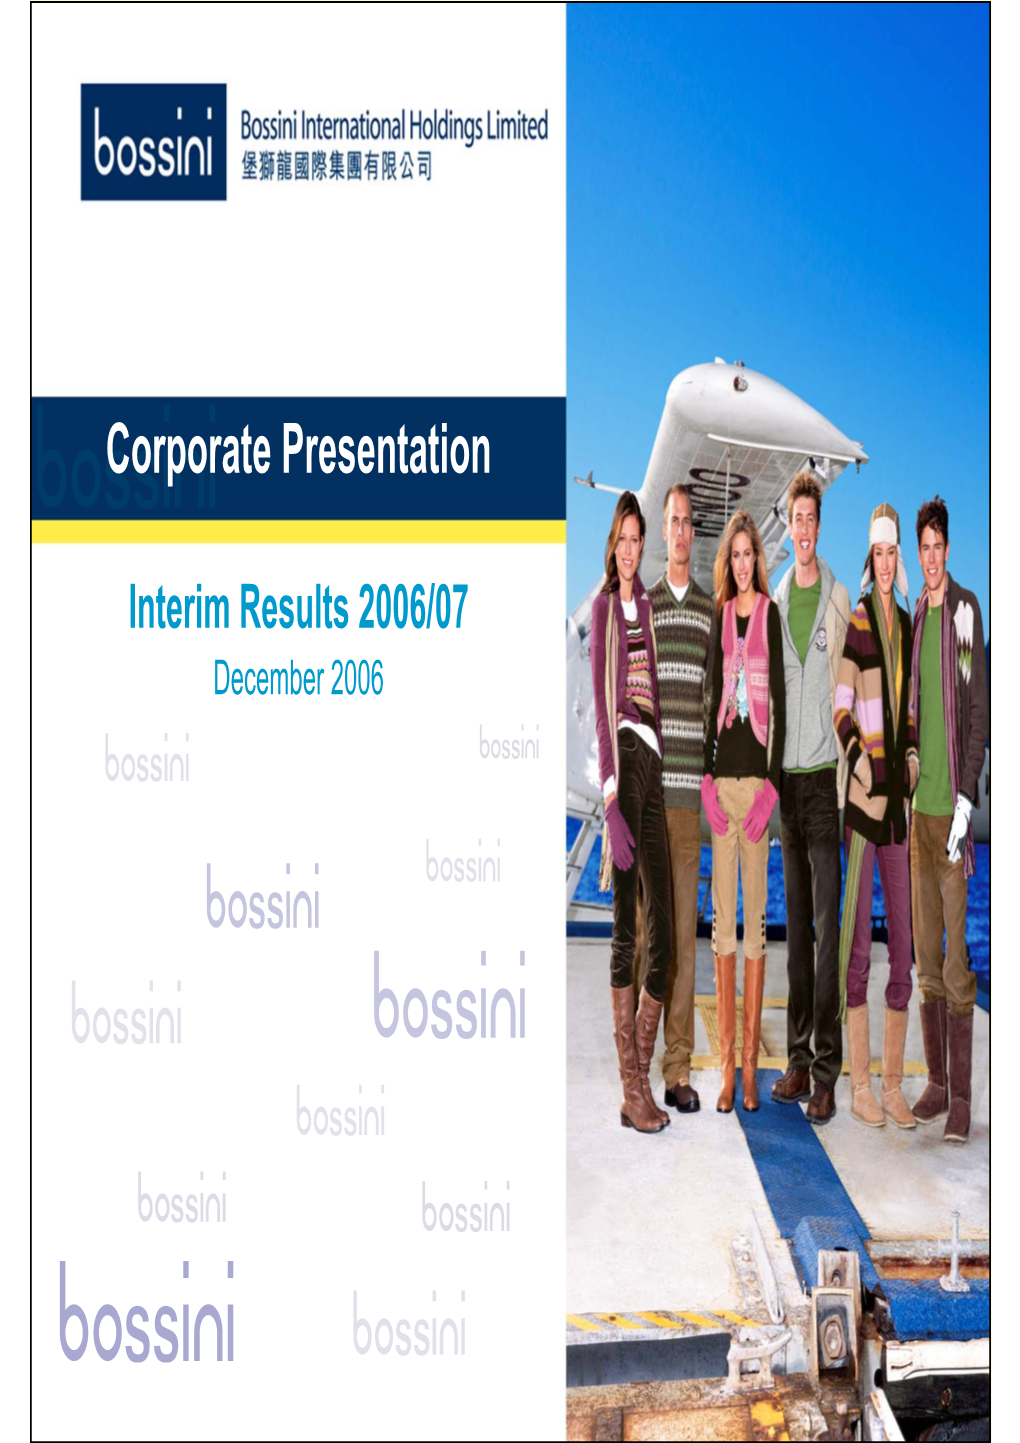 Bossini International Holdings Limited